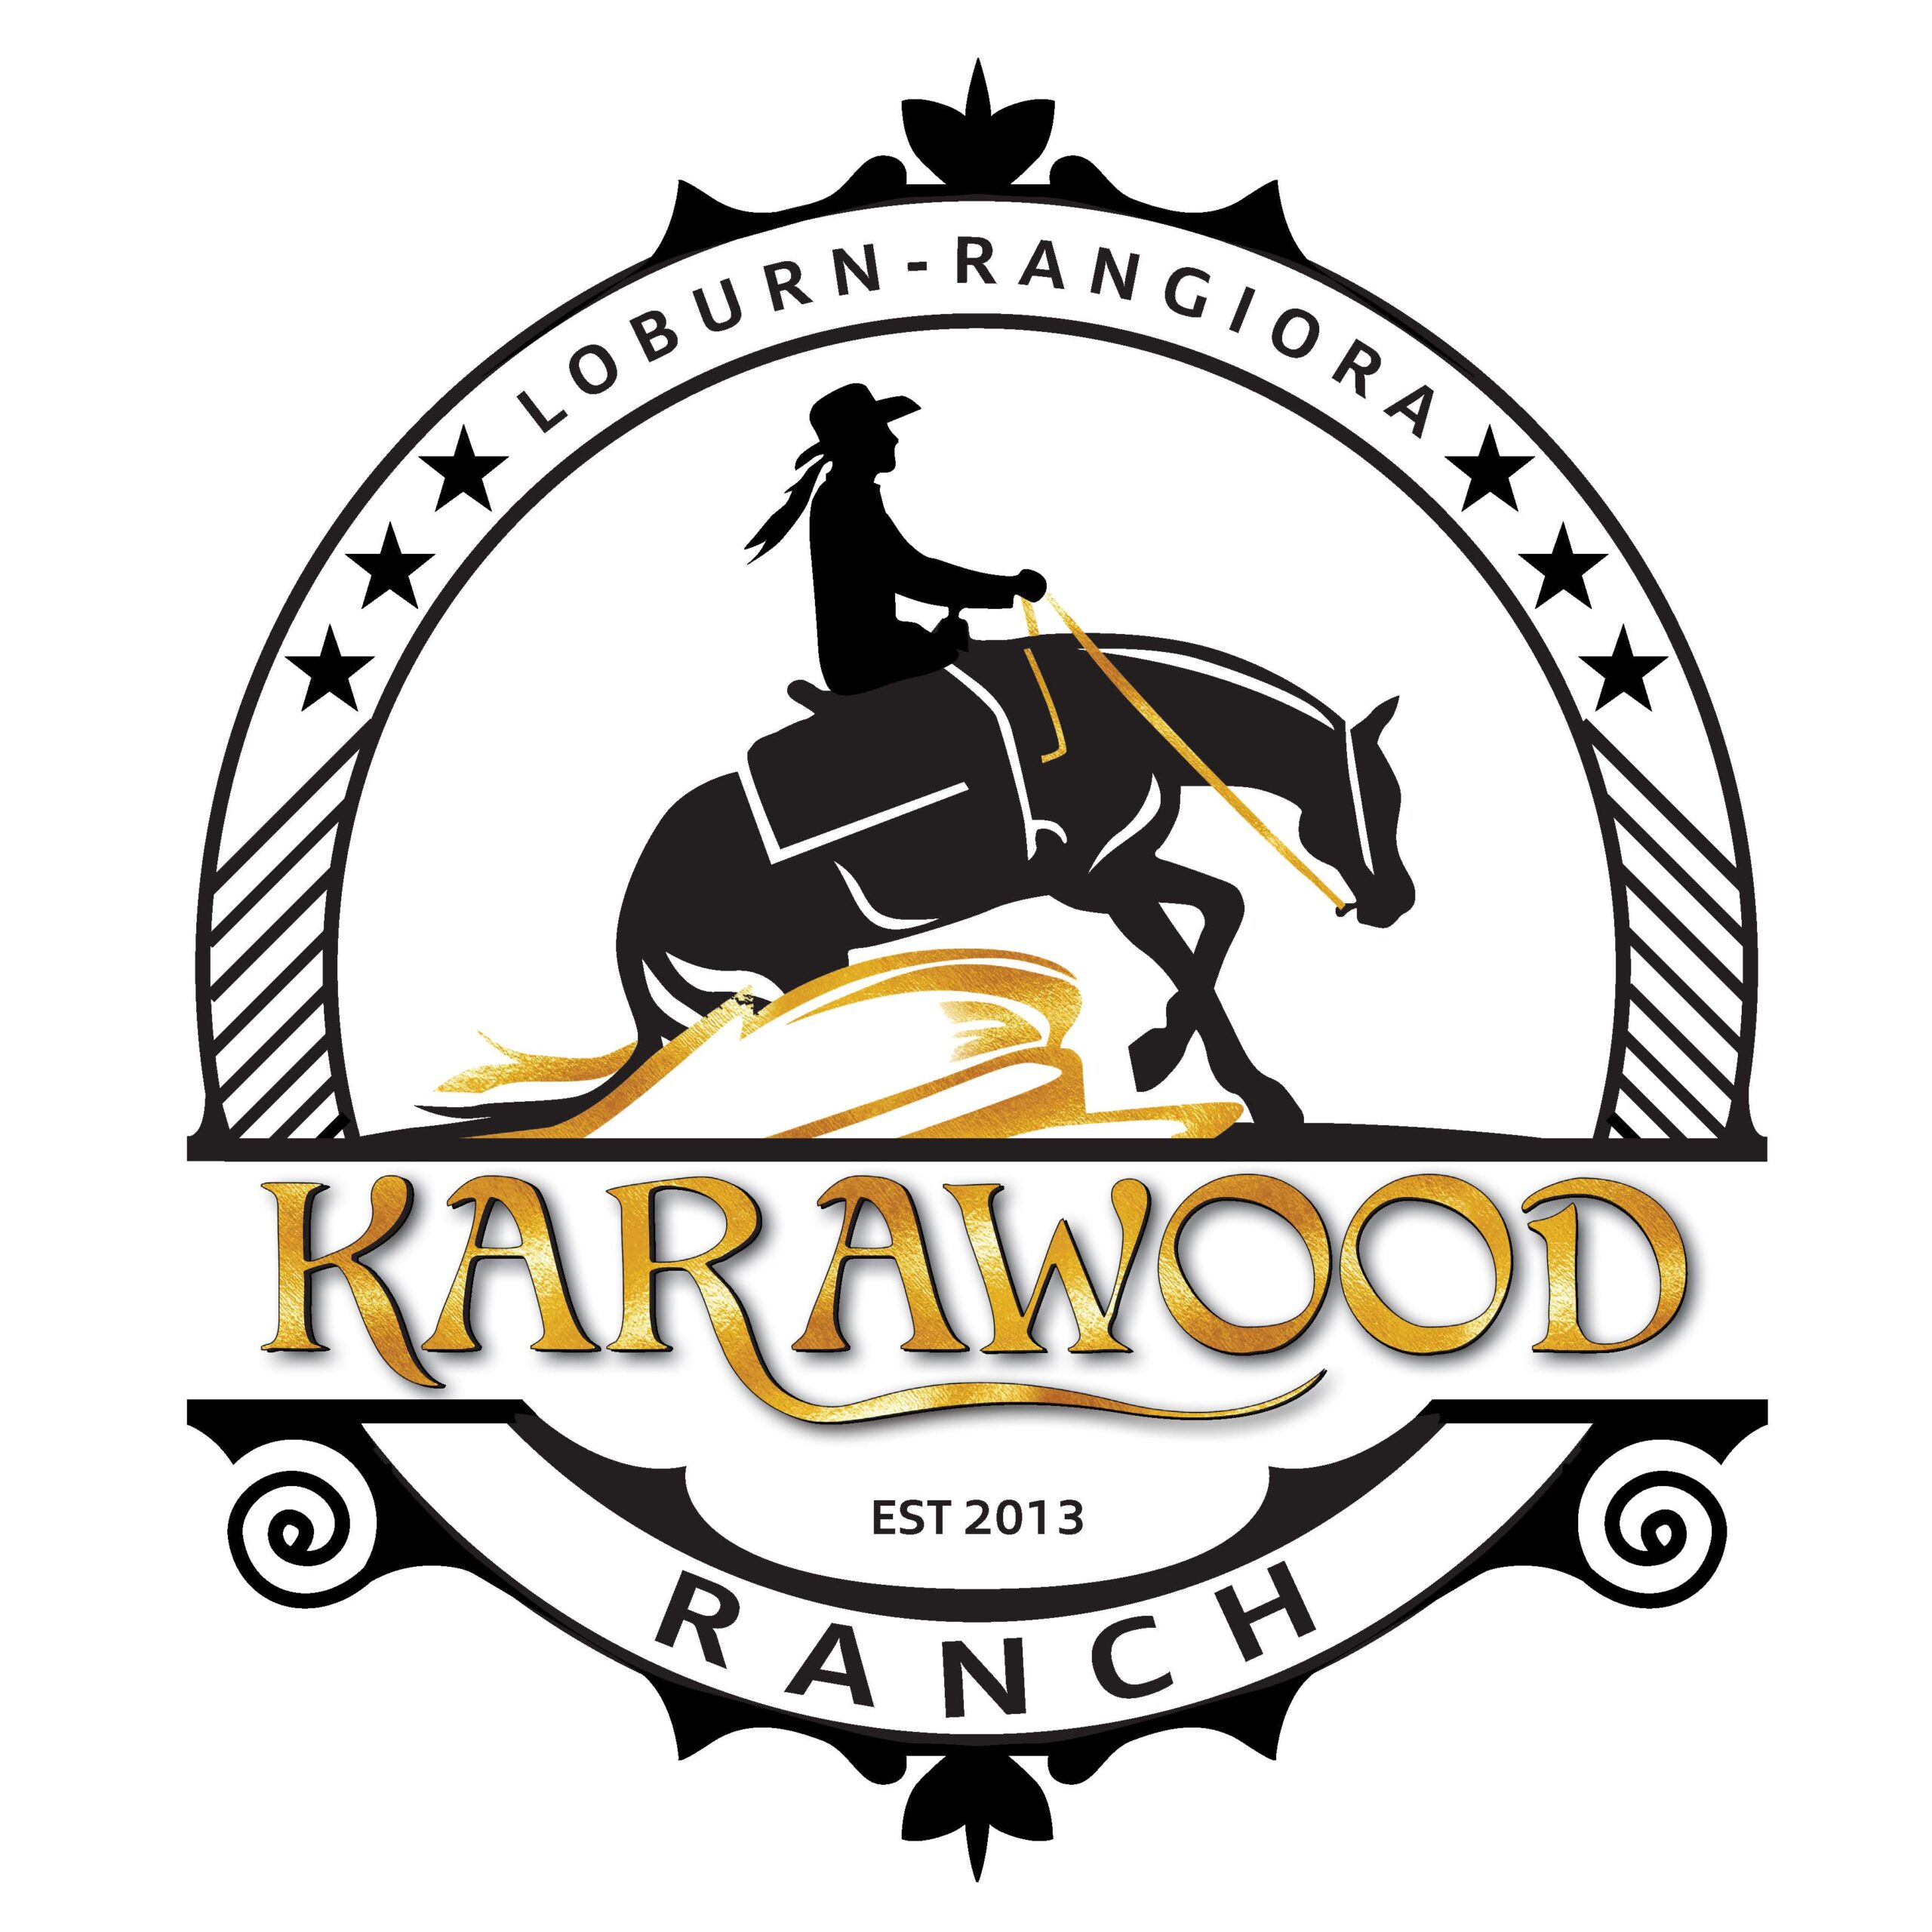 Karawood Ranch 